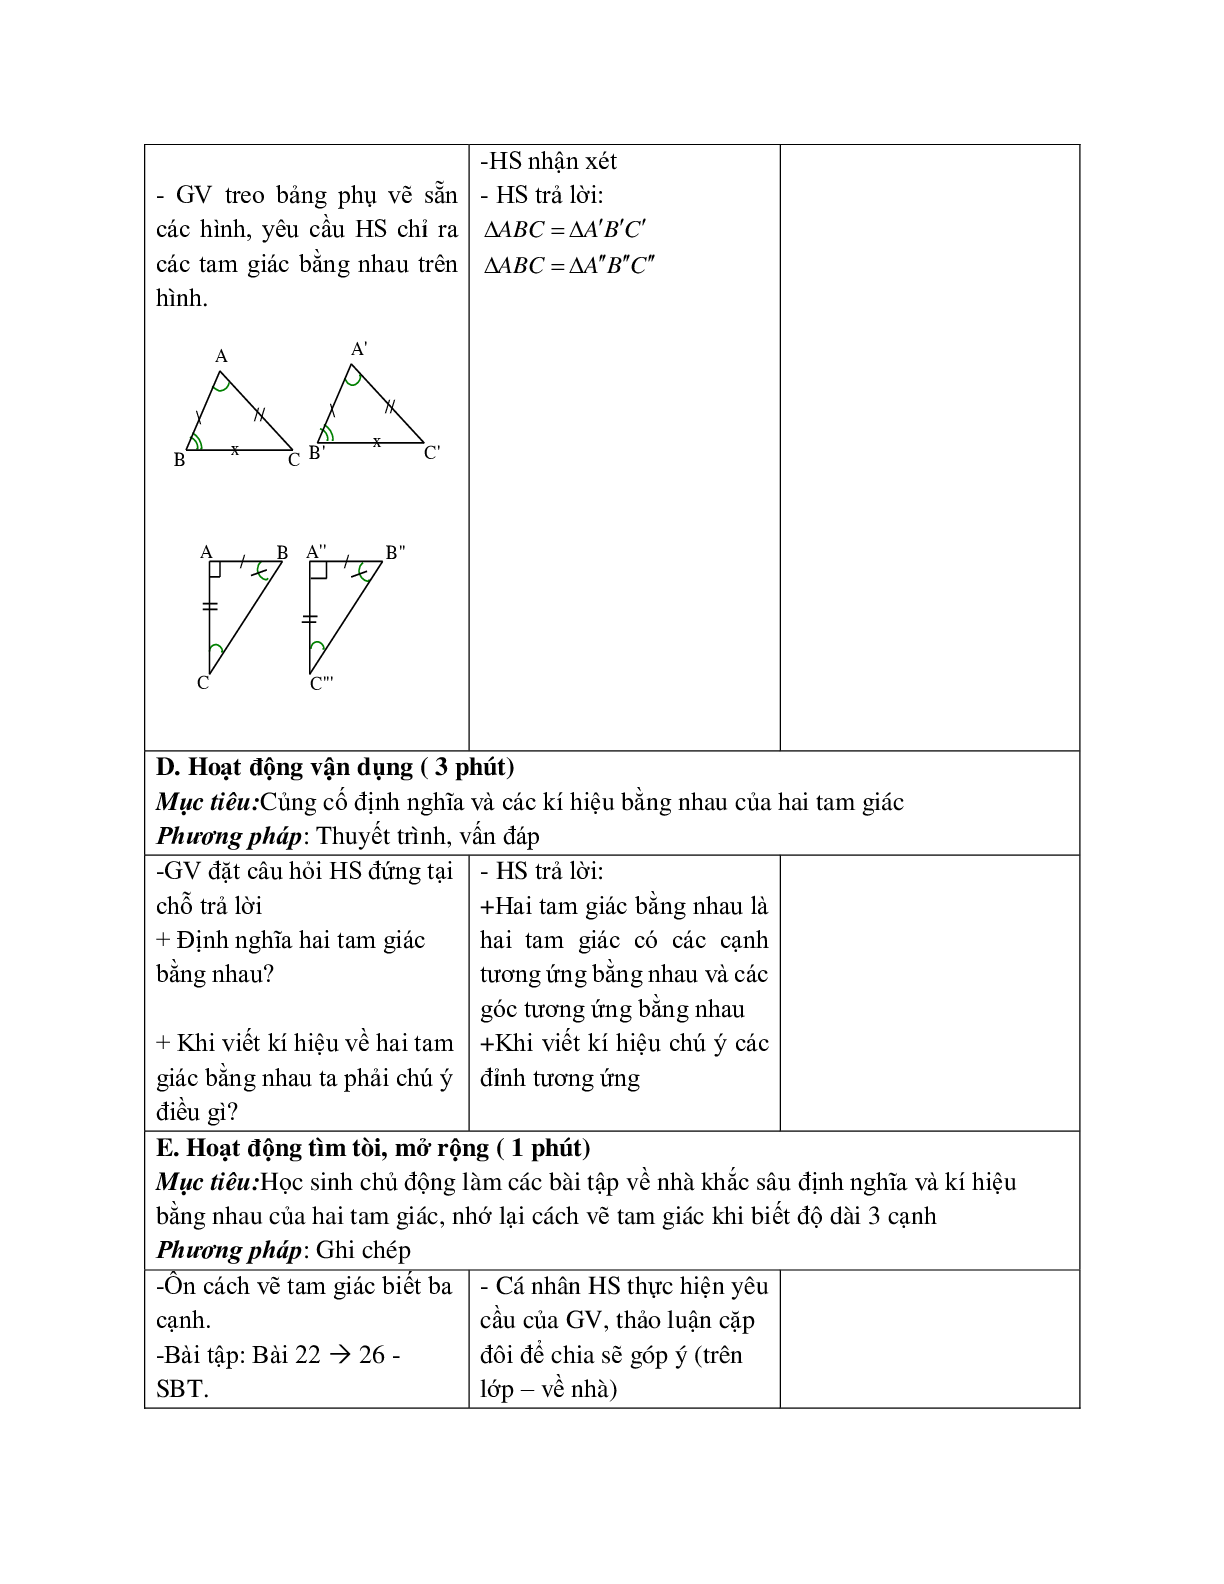 Giáo án Toán học 7 bài 2: Hai tam giác bằng nhau hay nhất (trang 10)